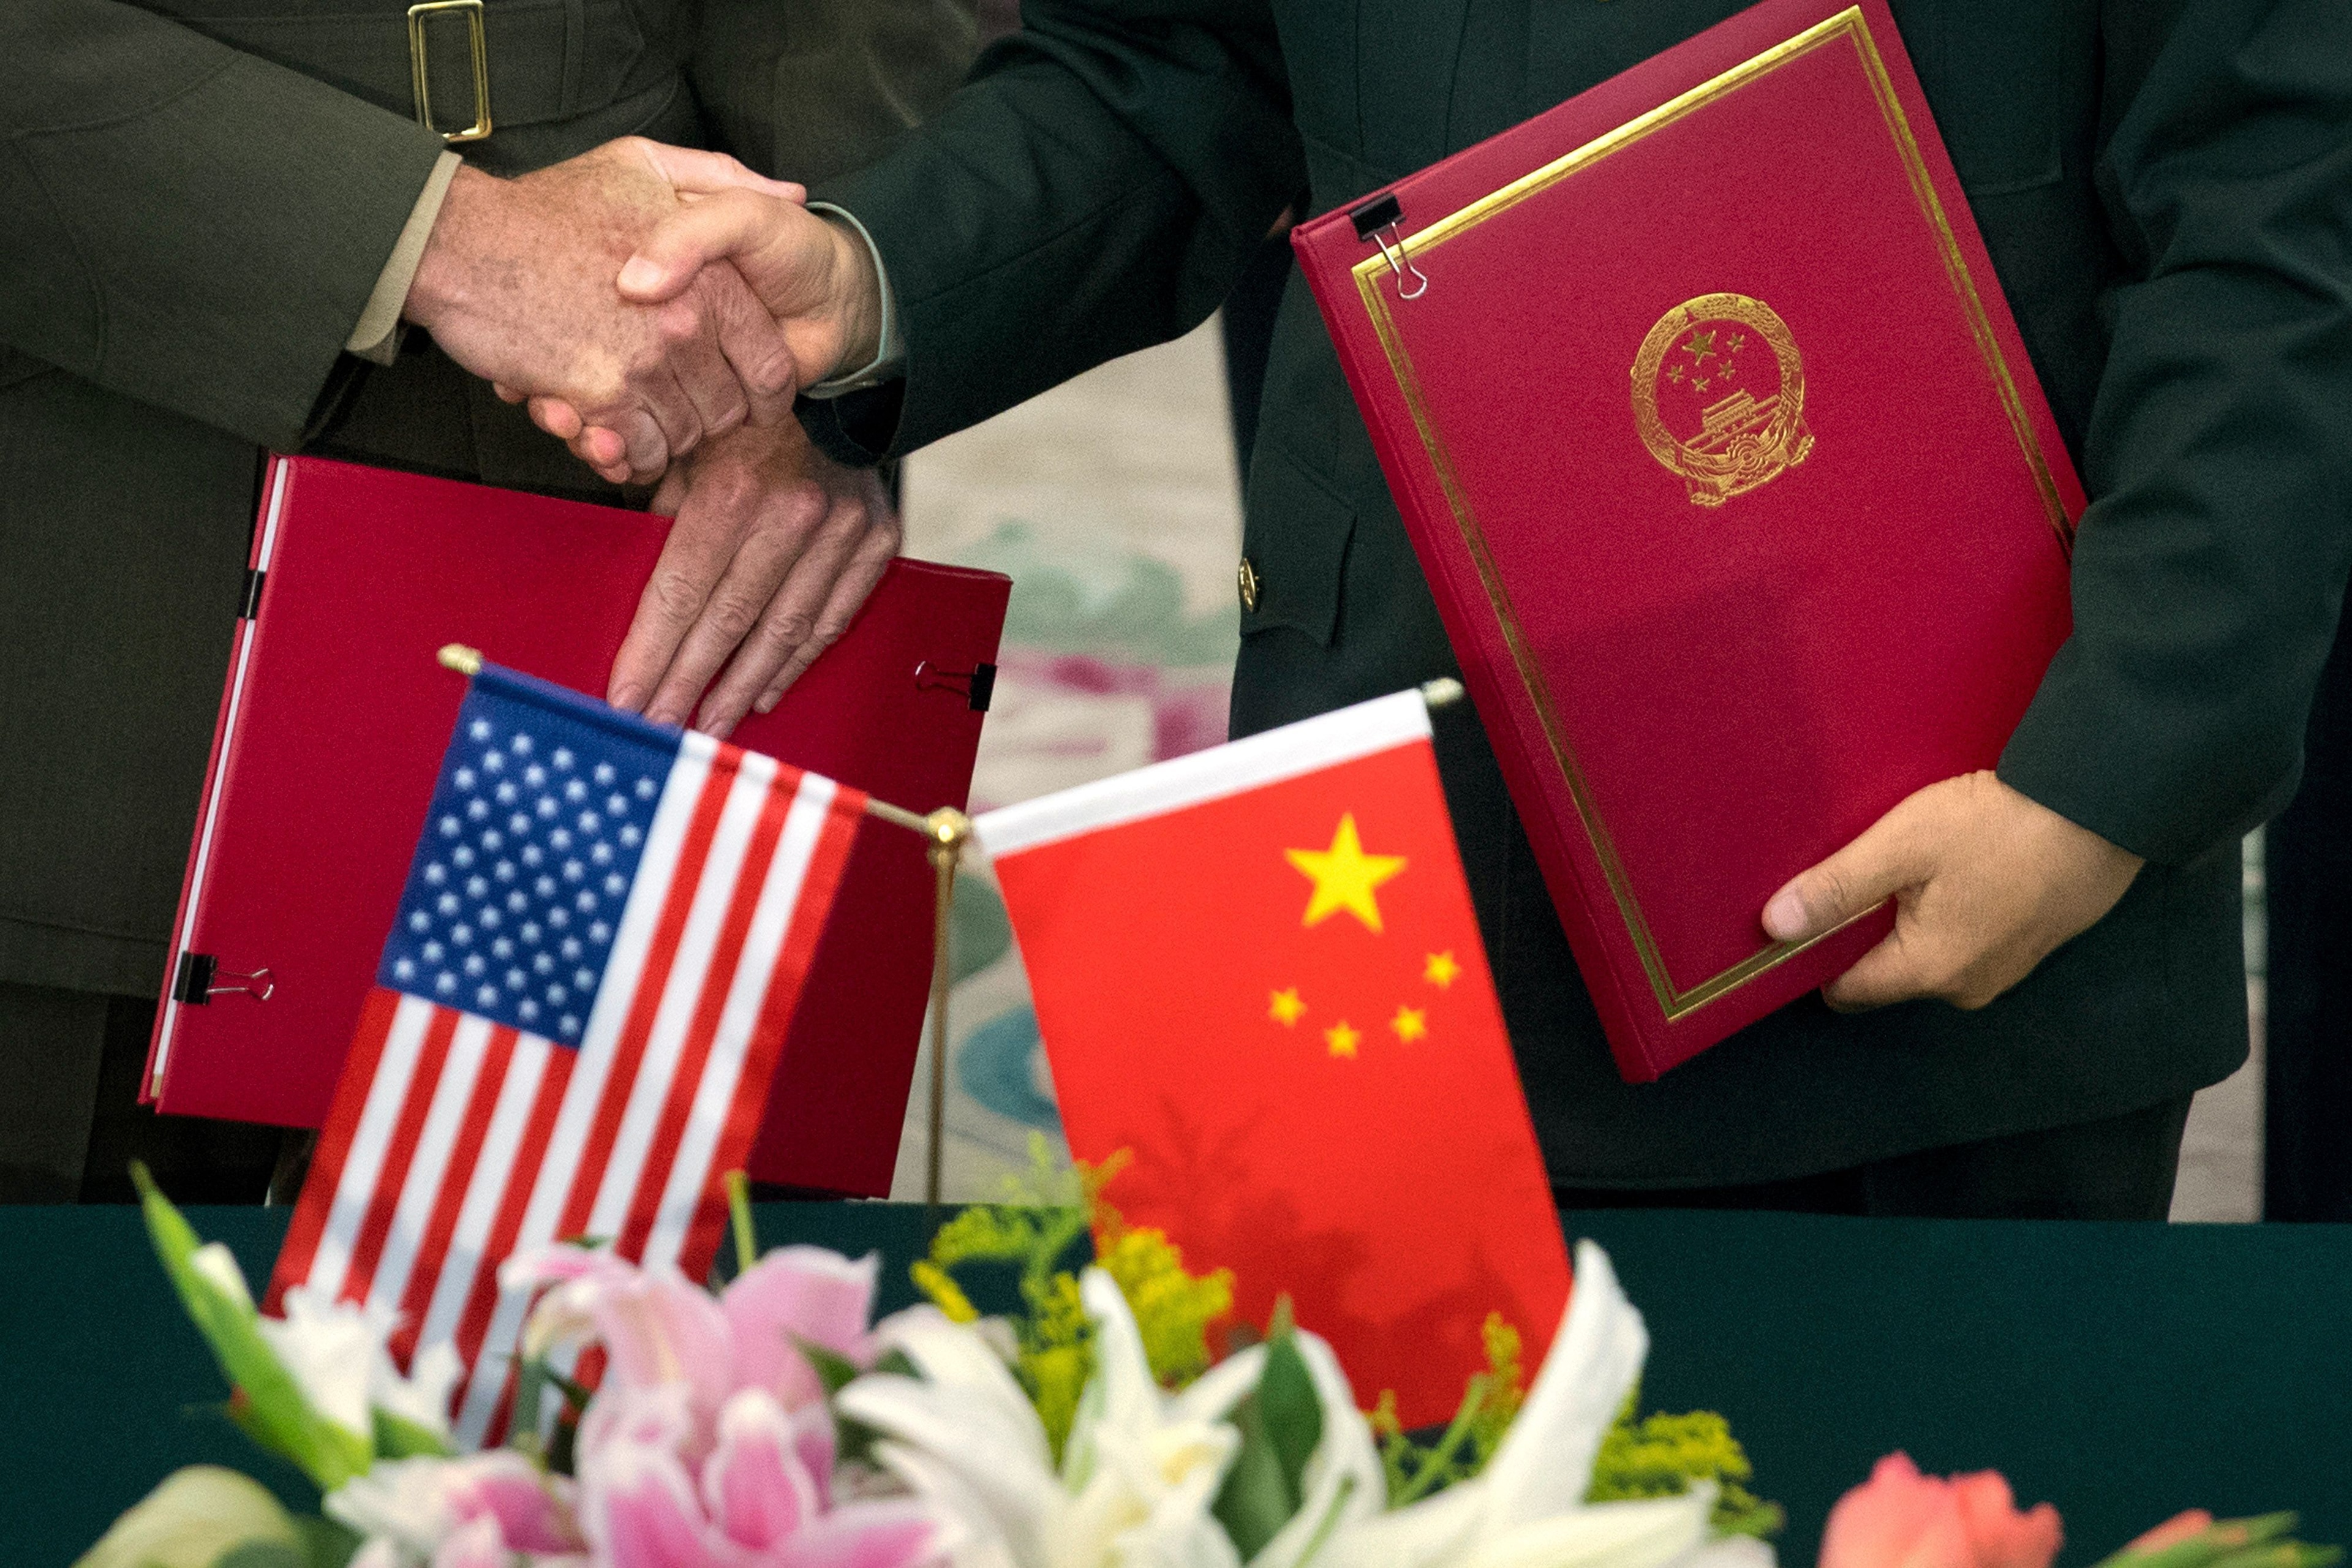 Trade deal, China in spotlight